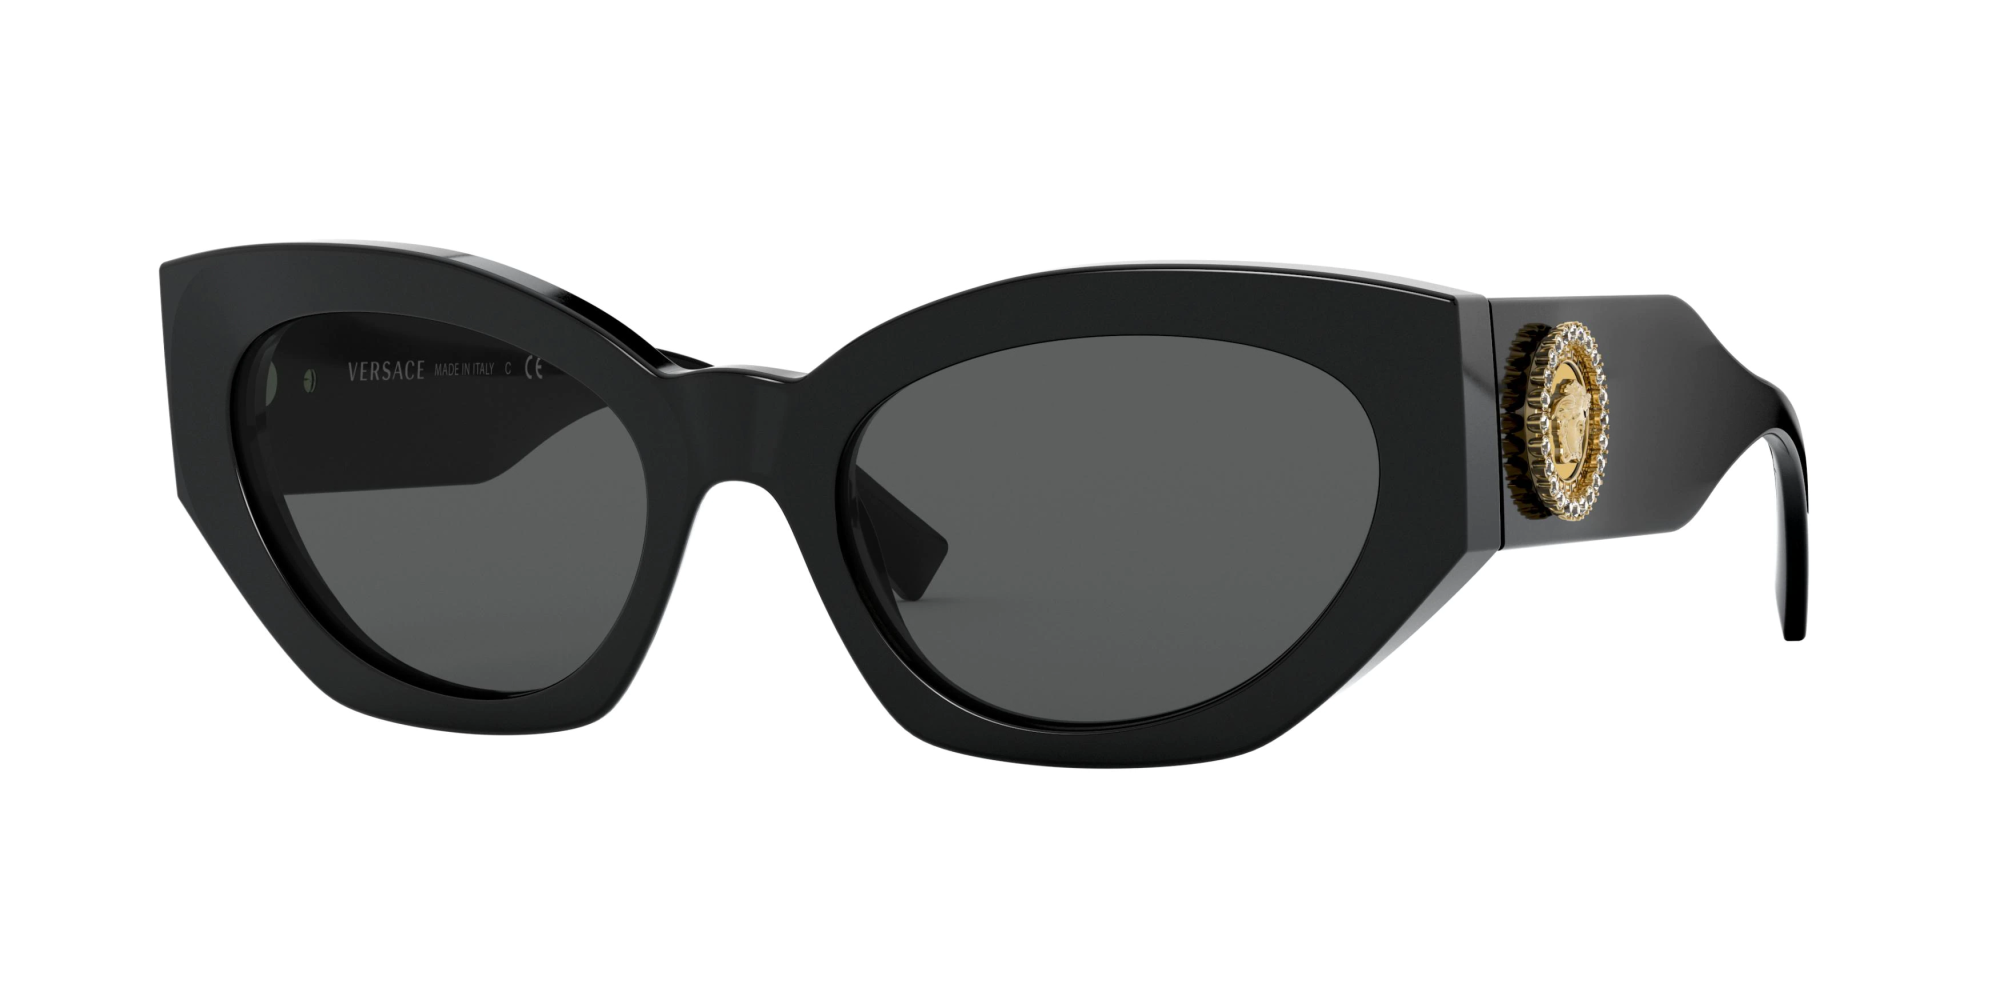 Очки Versace 4435. Versace 0ve4376b. Versace Medusa очки солнцезащитные. Очки Versace 4446. Купить очки версаче